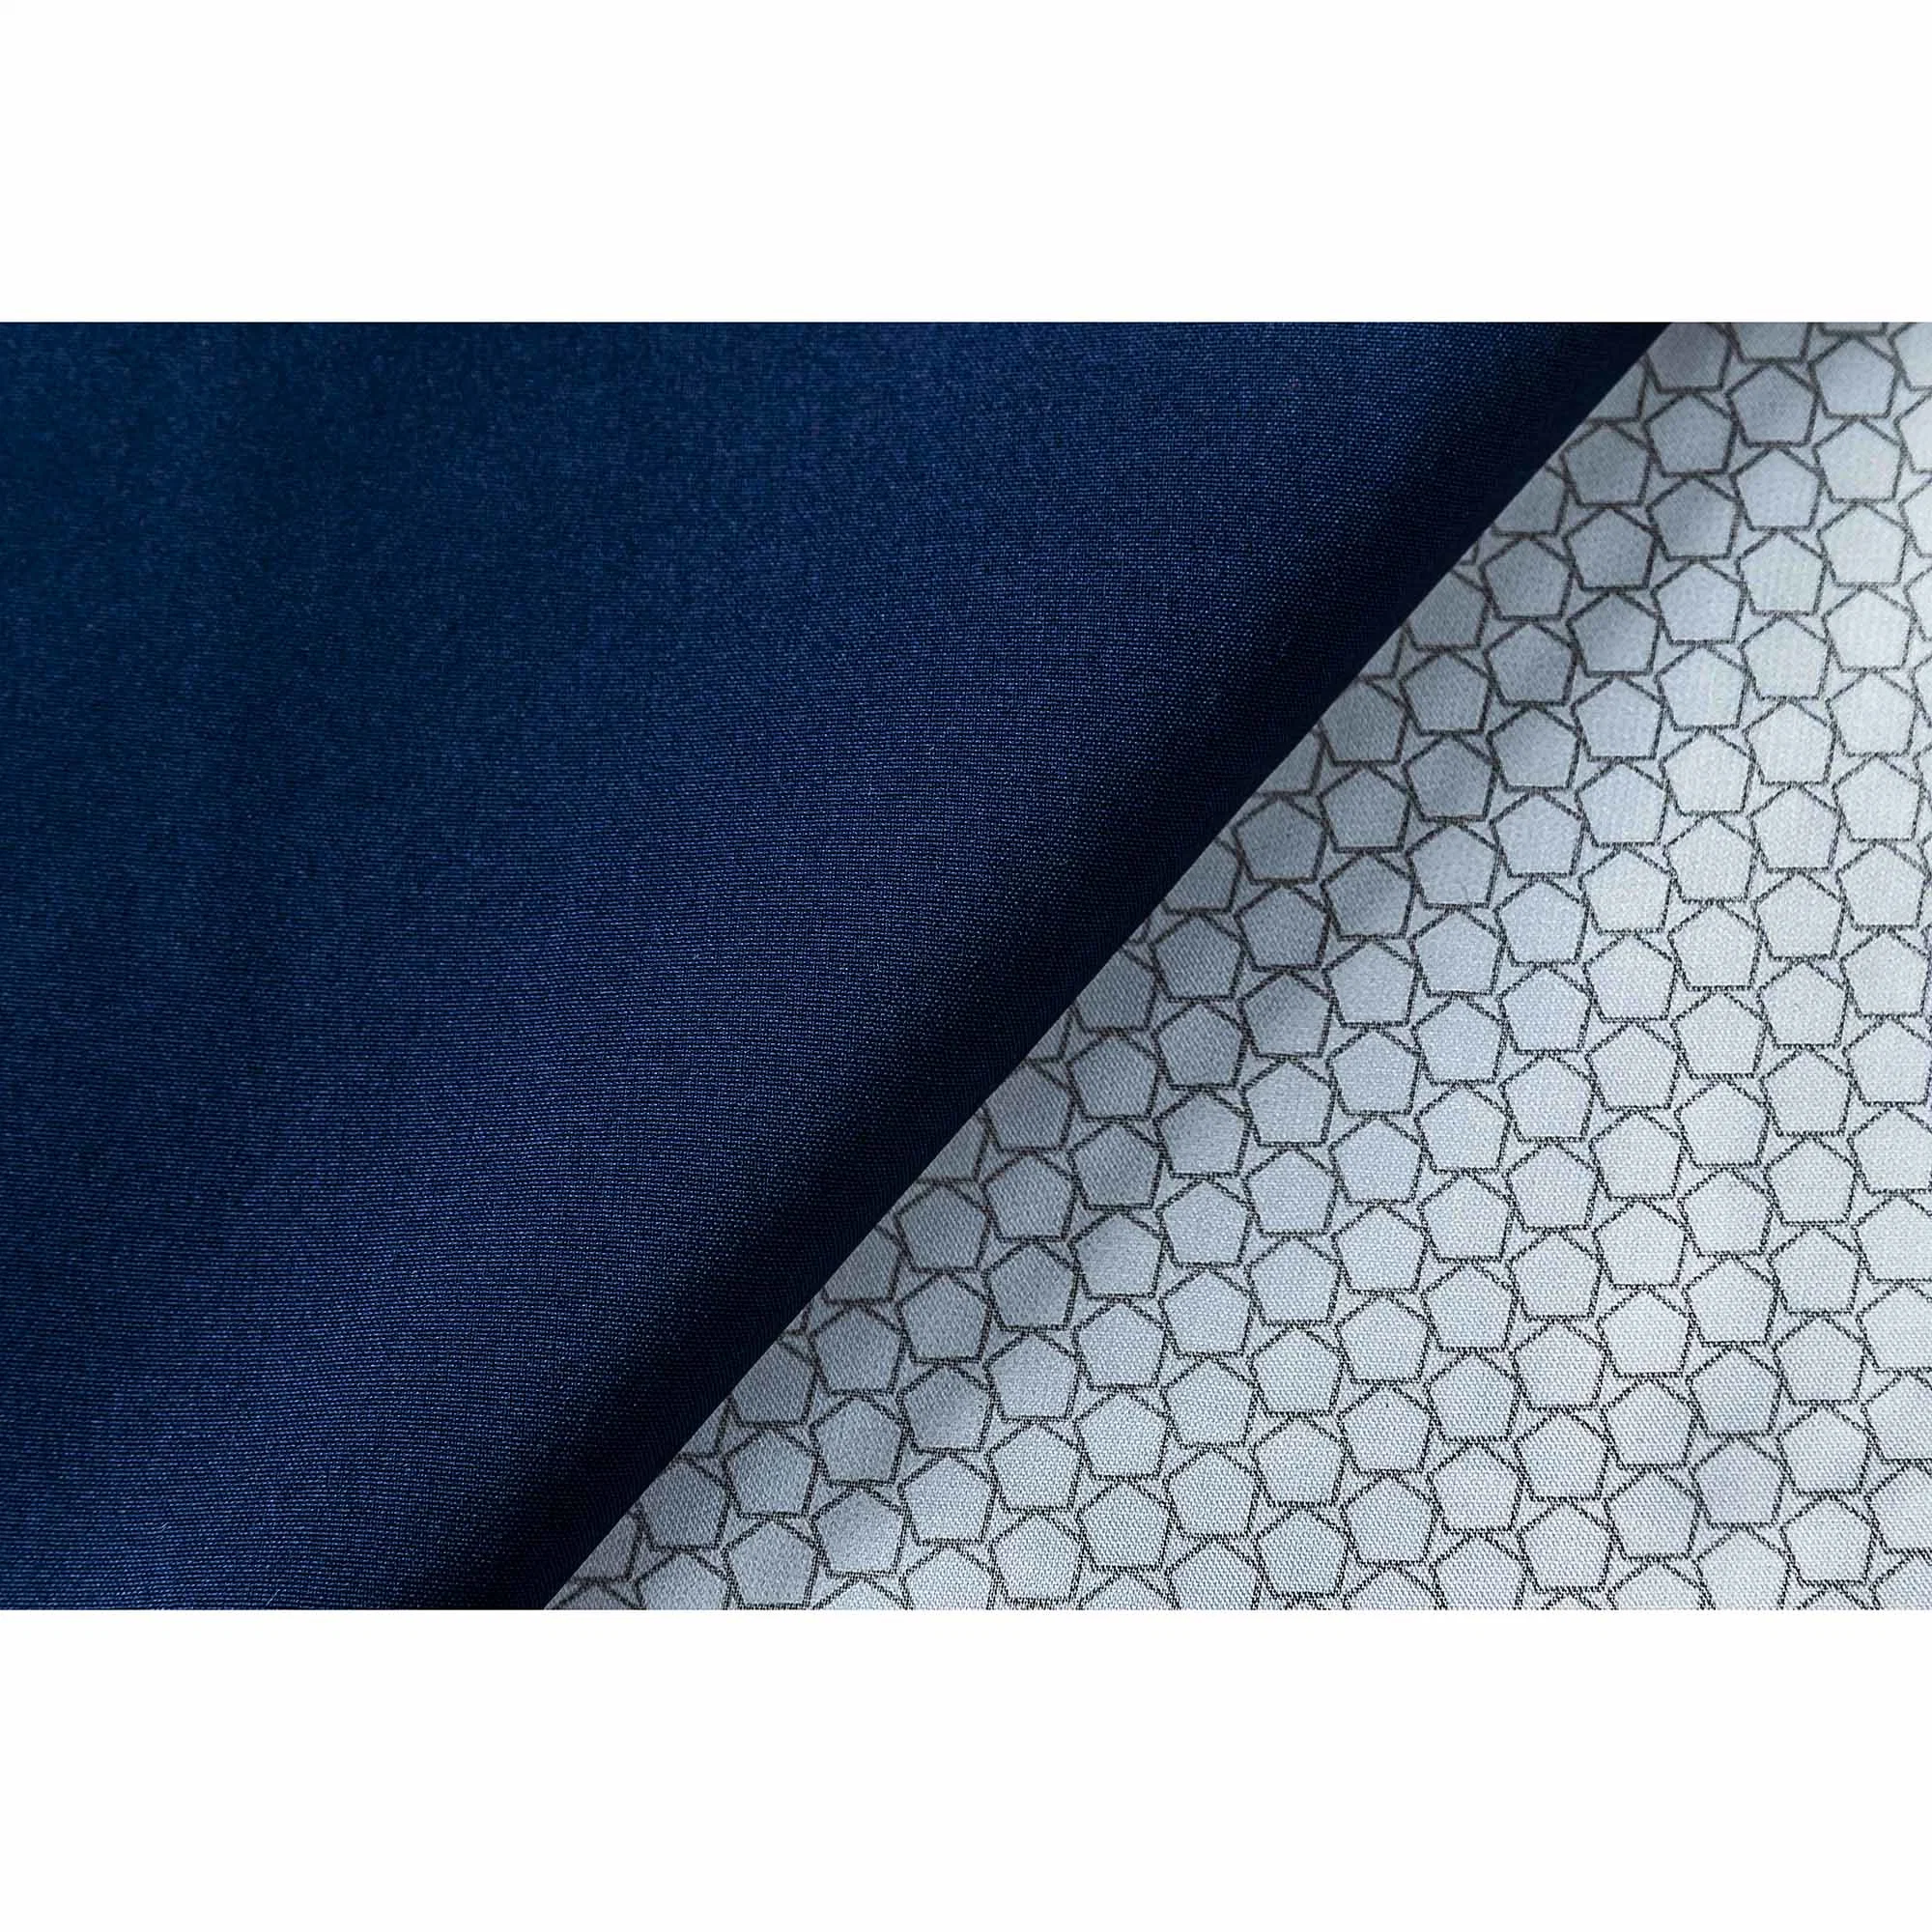 Altamente Técnicas 100% poliéster Tikko colados com 20D único tecido Jersey impressão dos dois lados em TPU para laminação